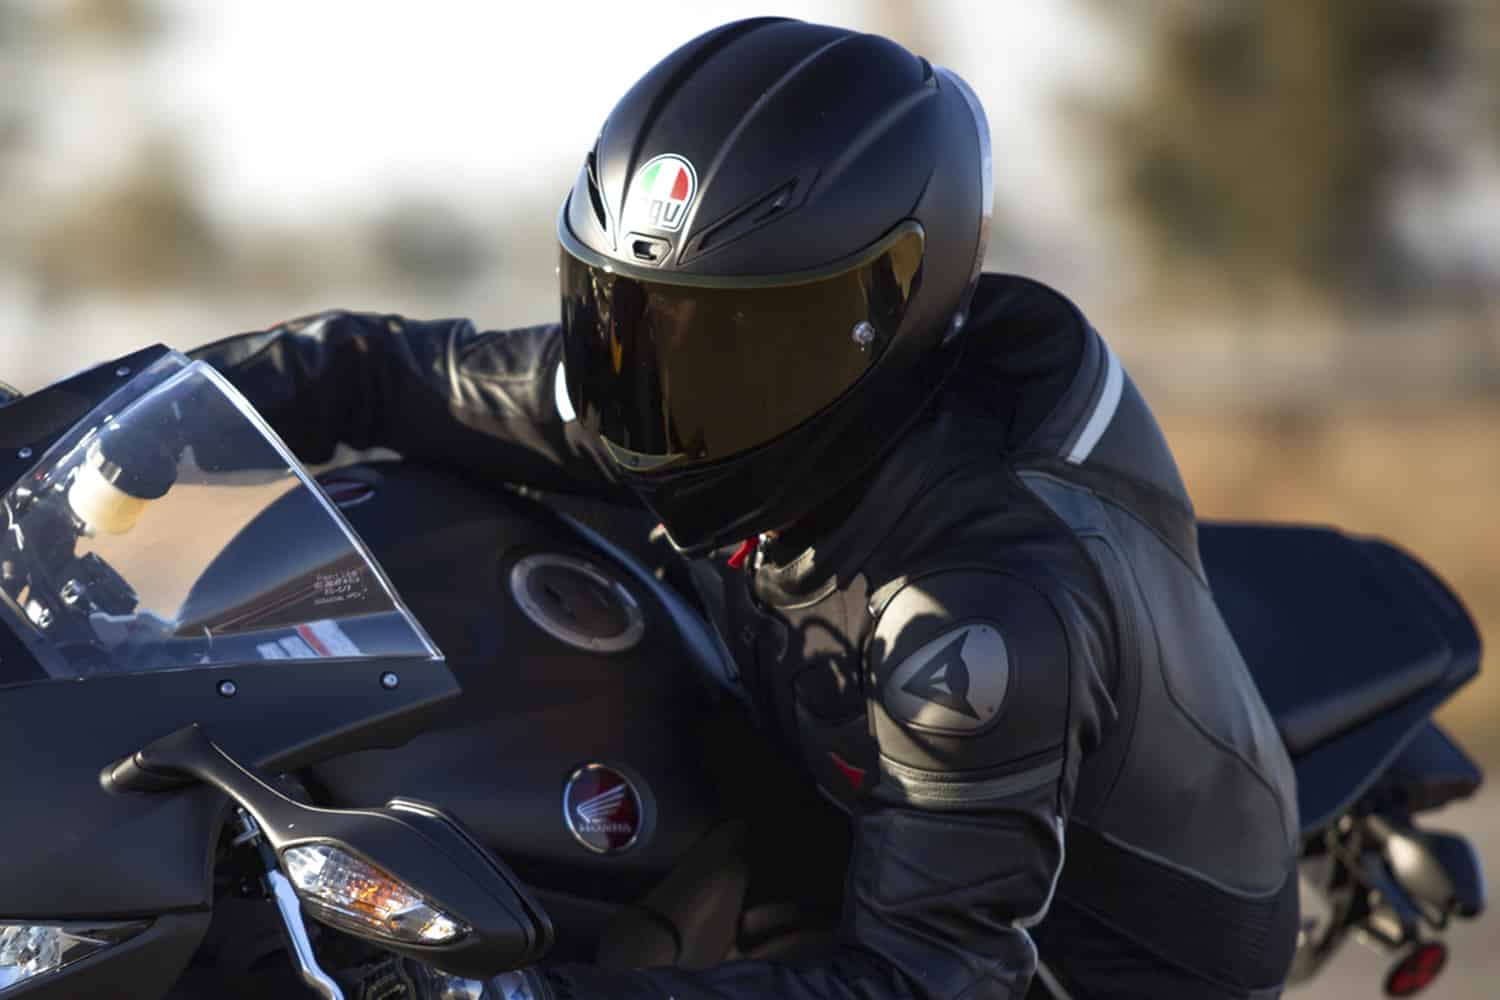 Top 10 Best Motorcycle Helmets in 2018